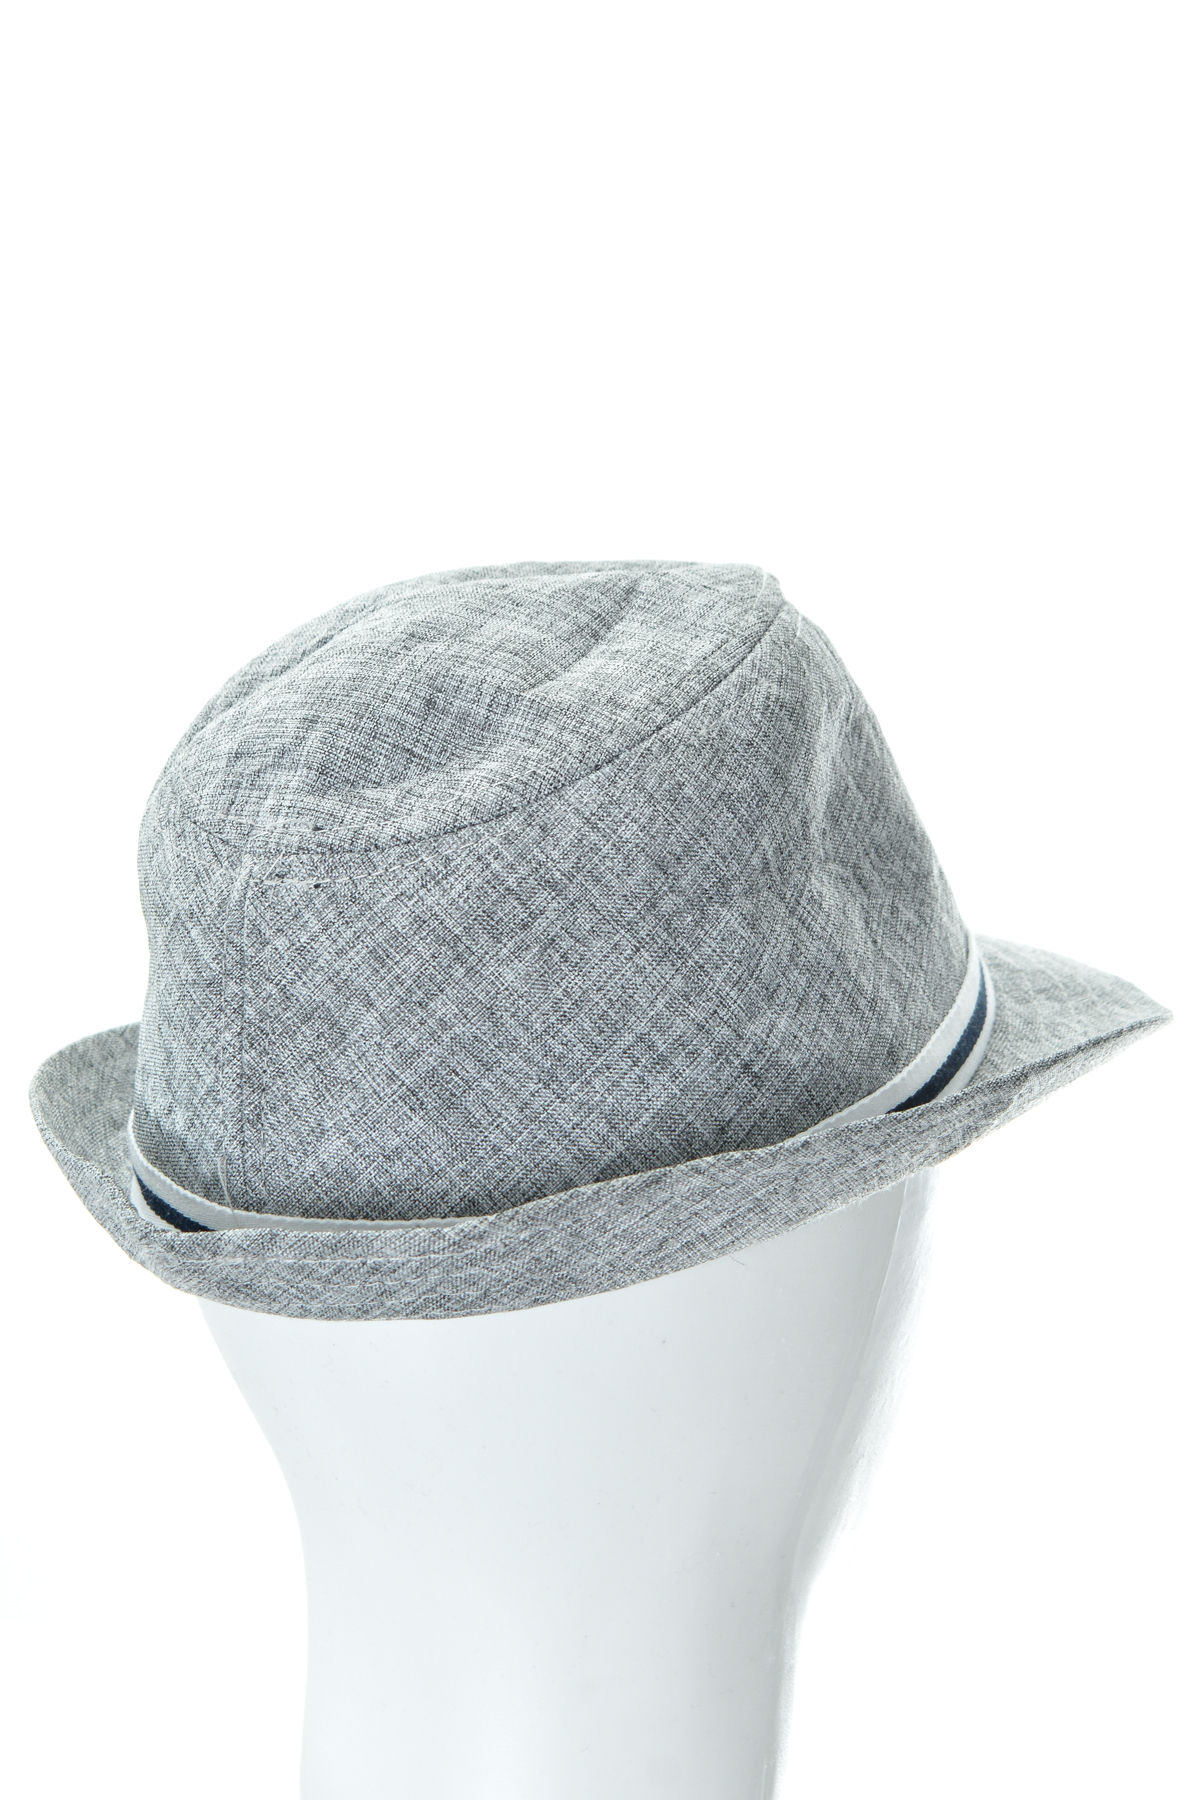 Boy's hat - 1